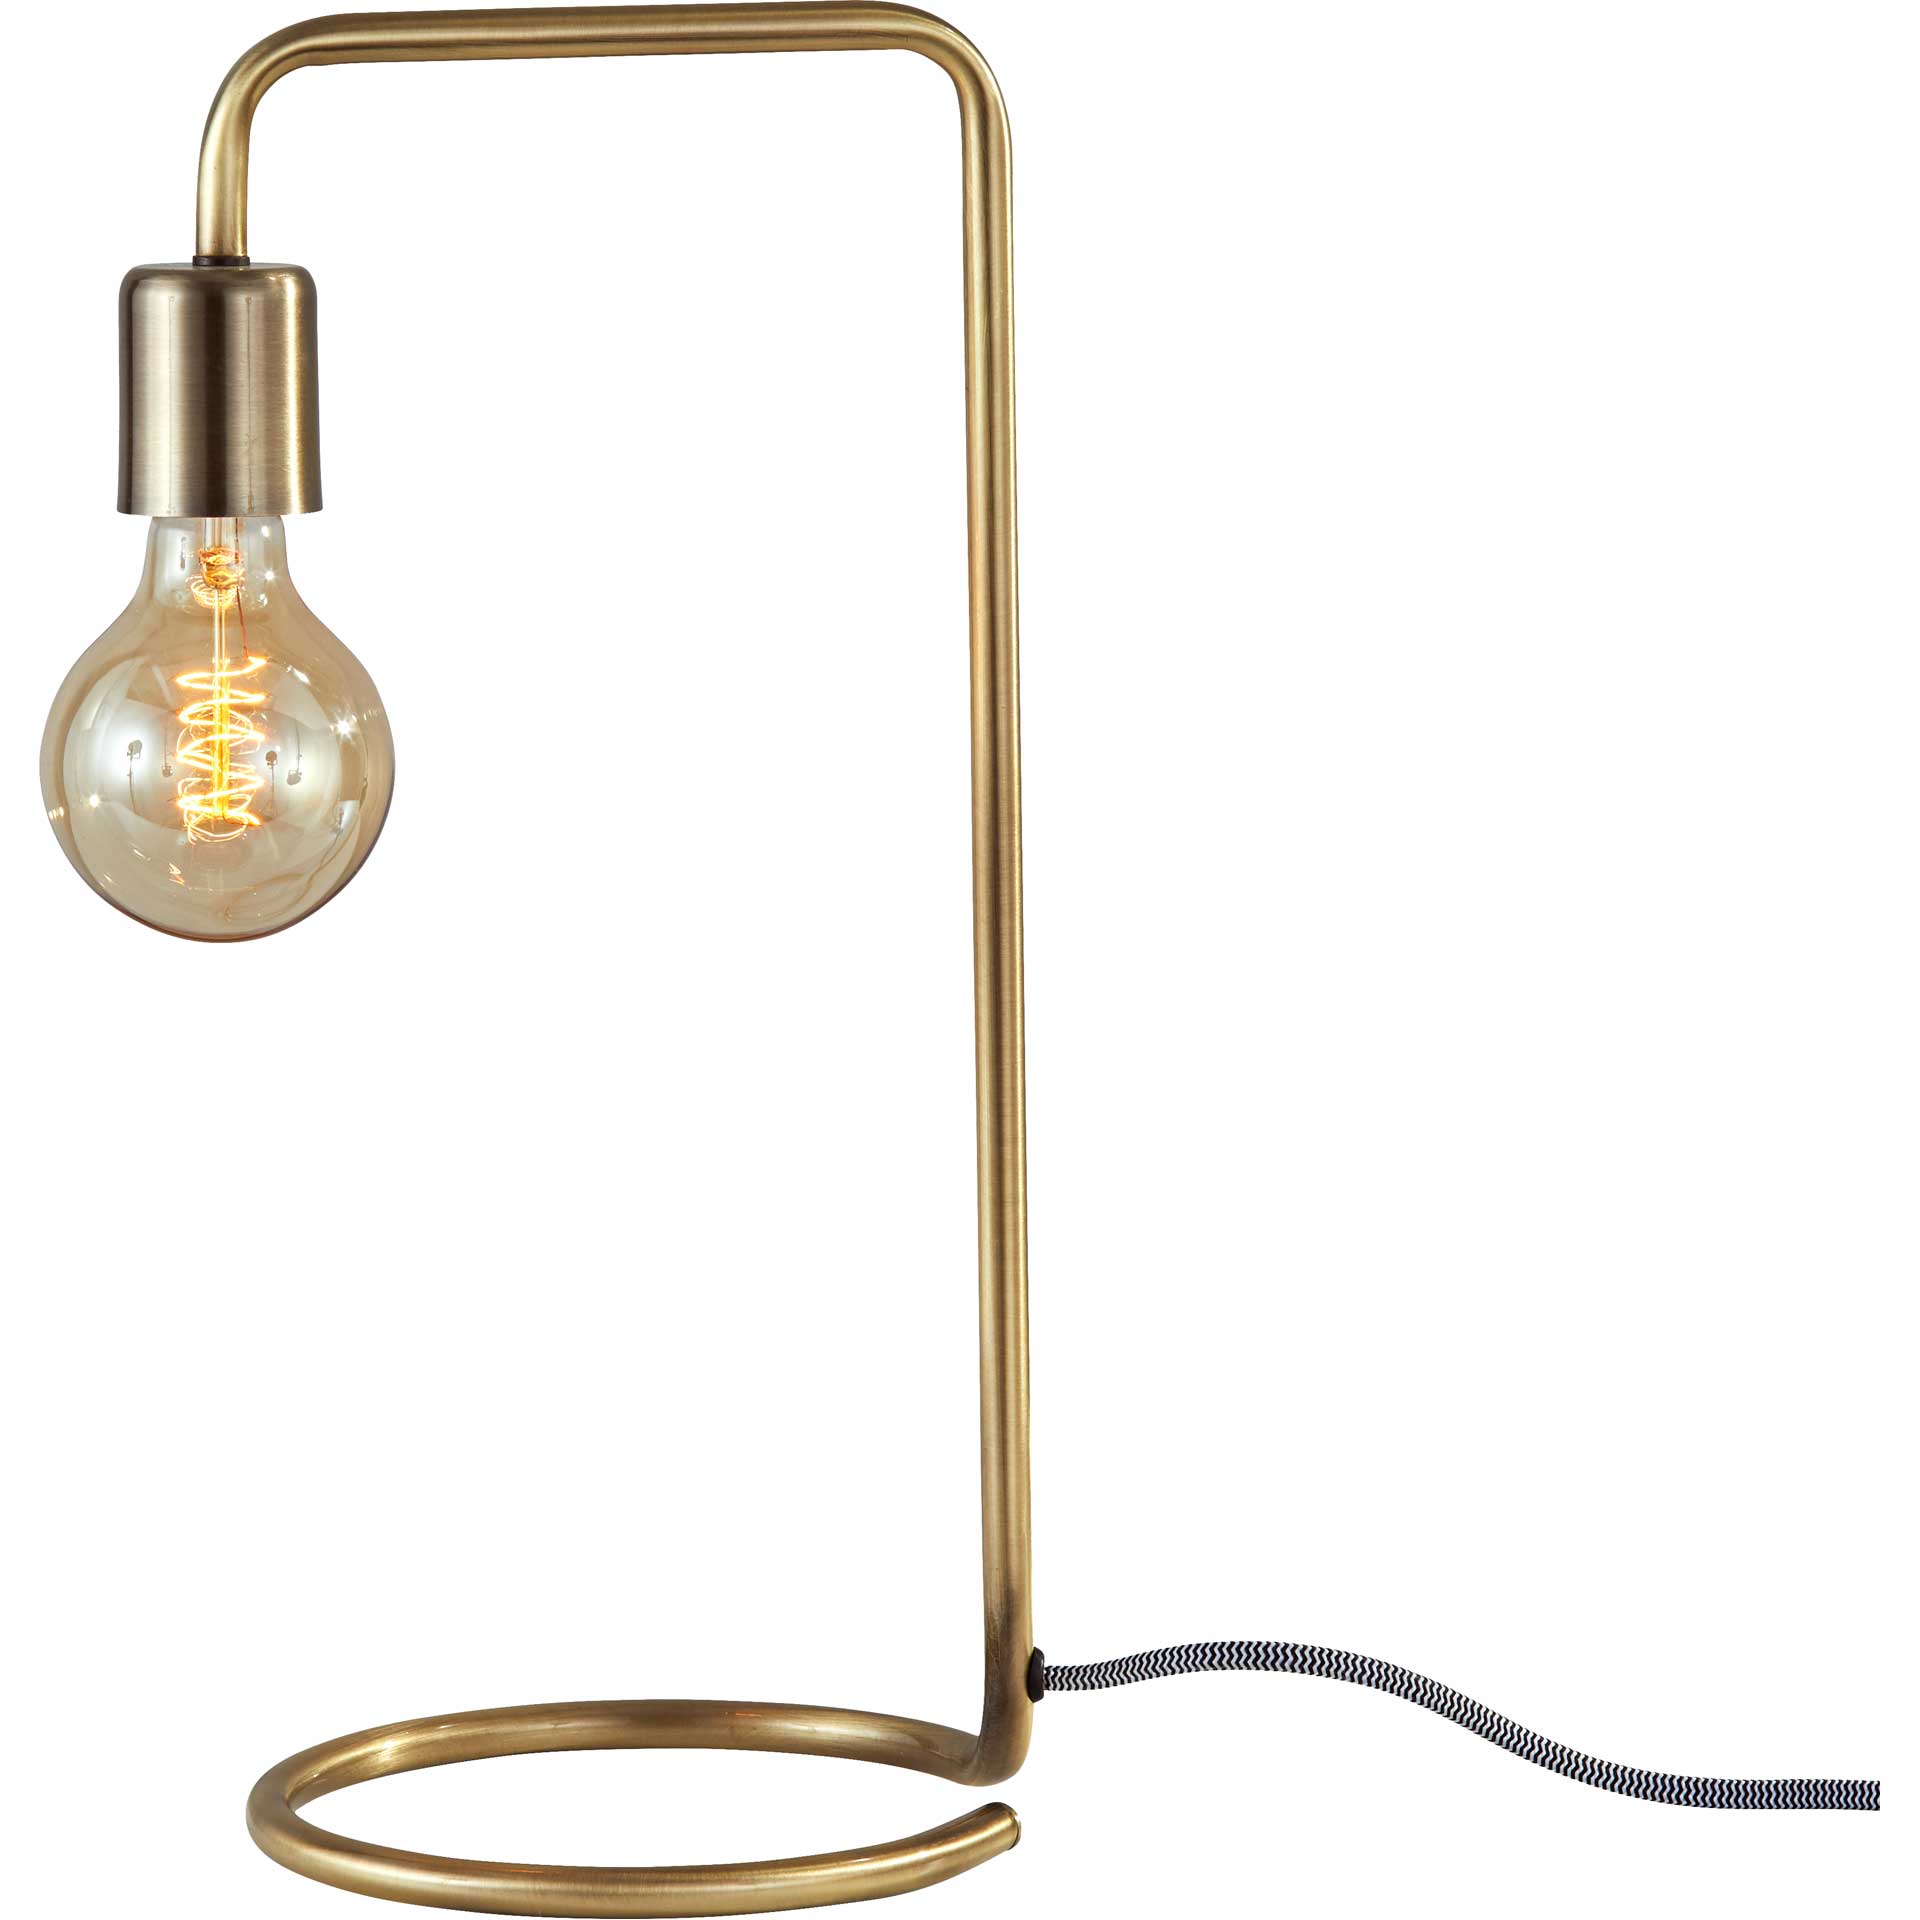 Montgeron Desk Lamp Antique Brass